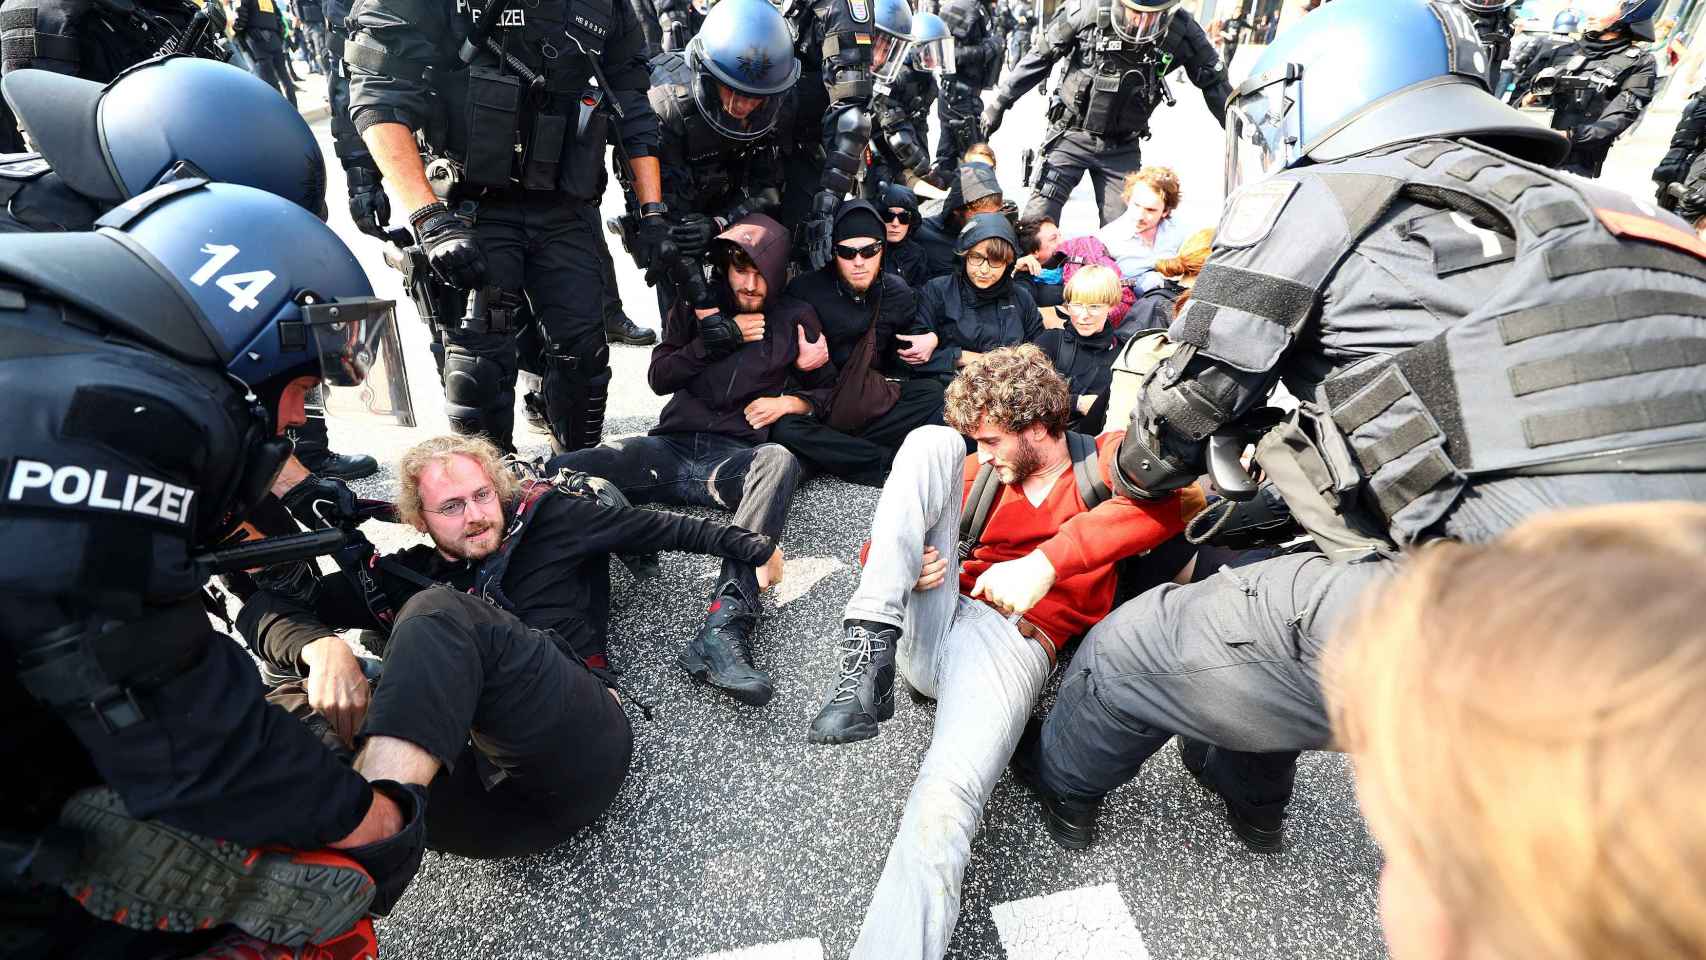 La Policía ha hecho un recuento de 44 detenciones tras las protestas.